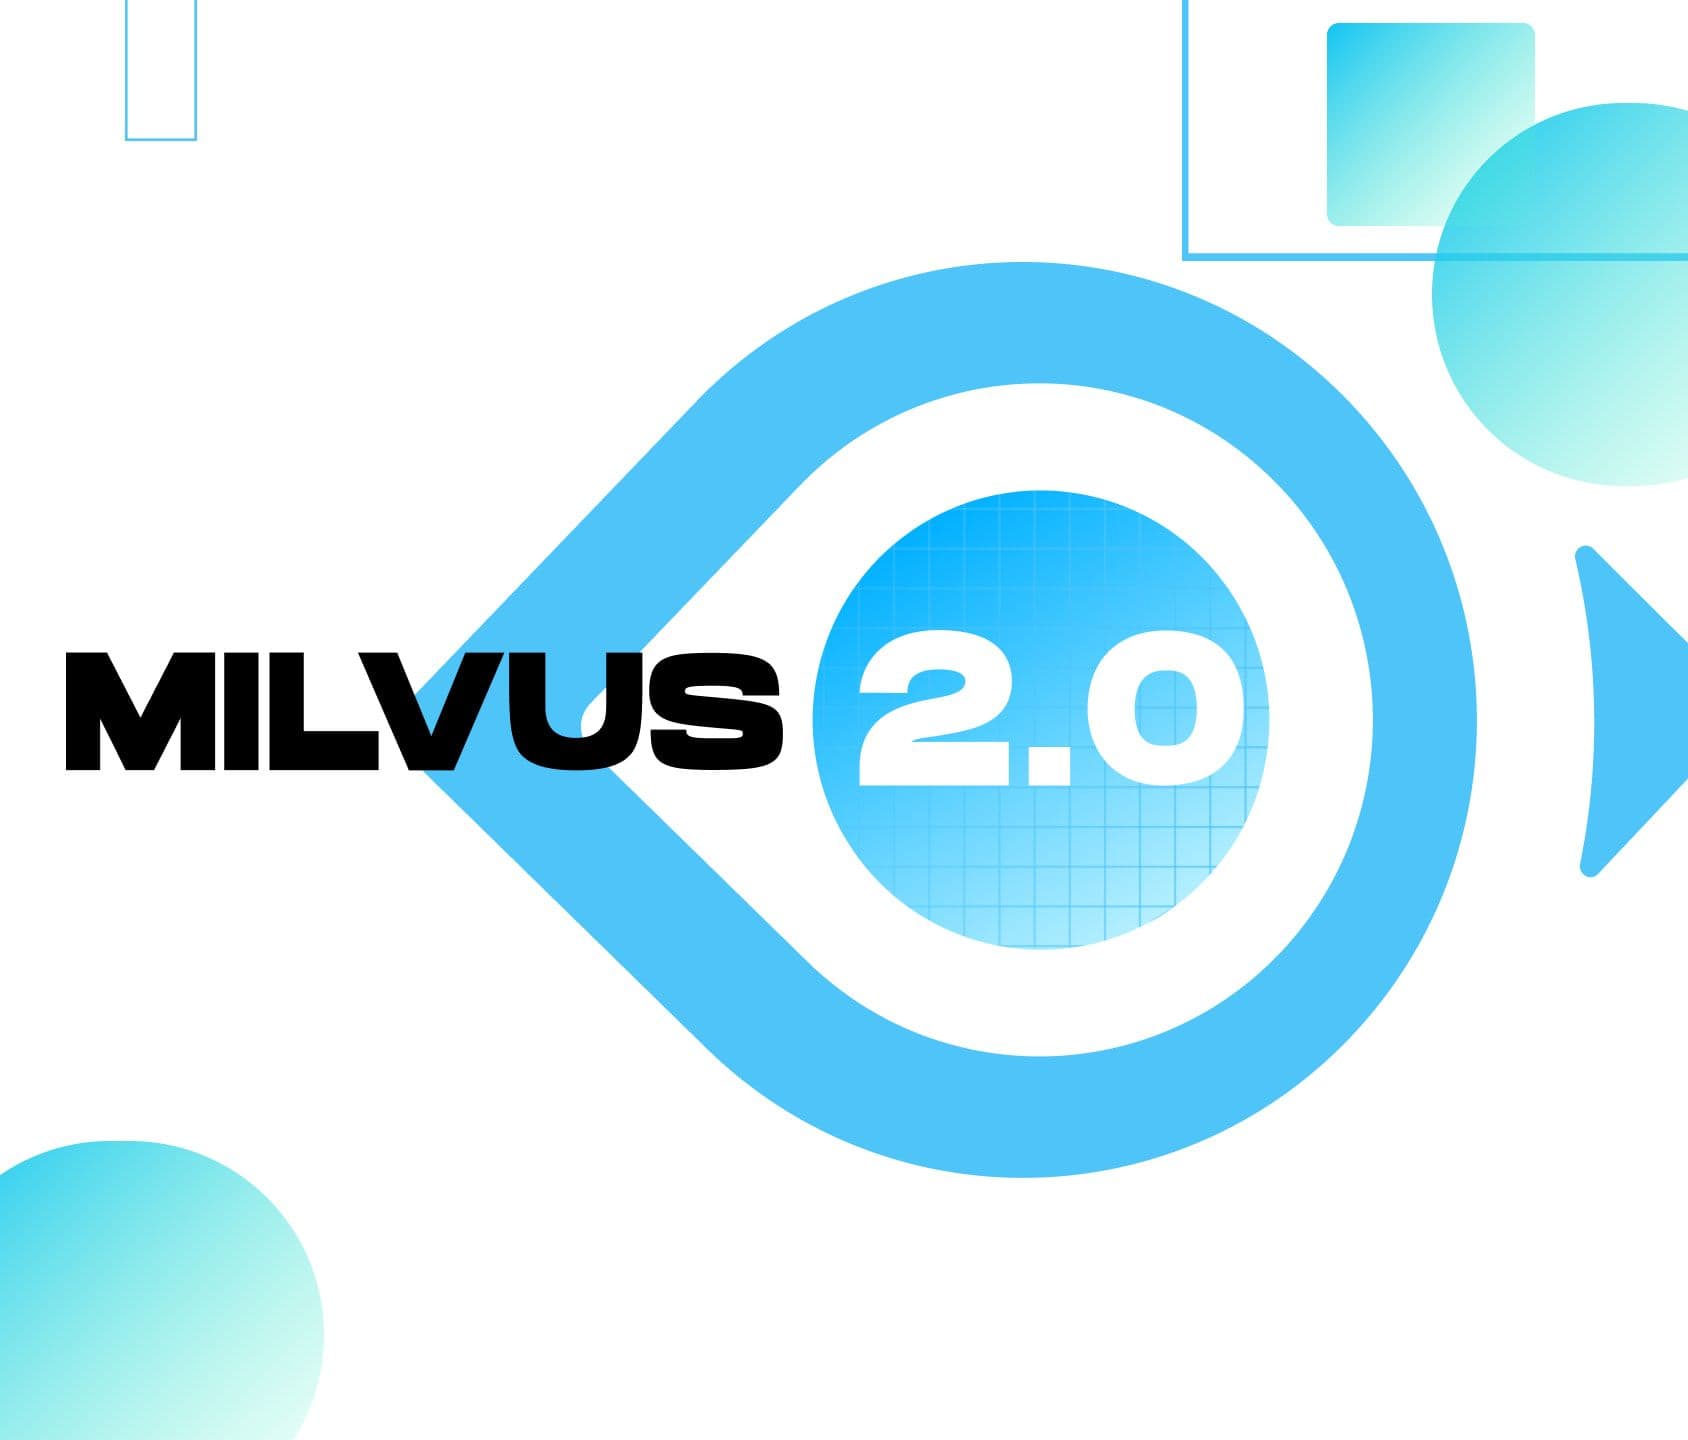 Milvus 2.0 Redefining Vector Database